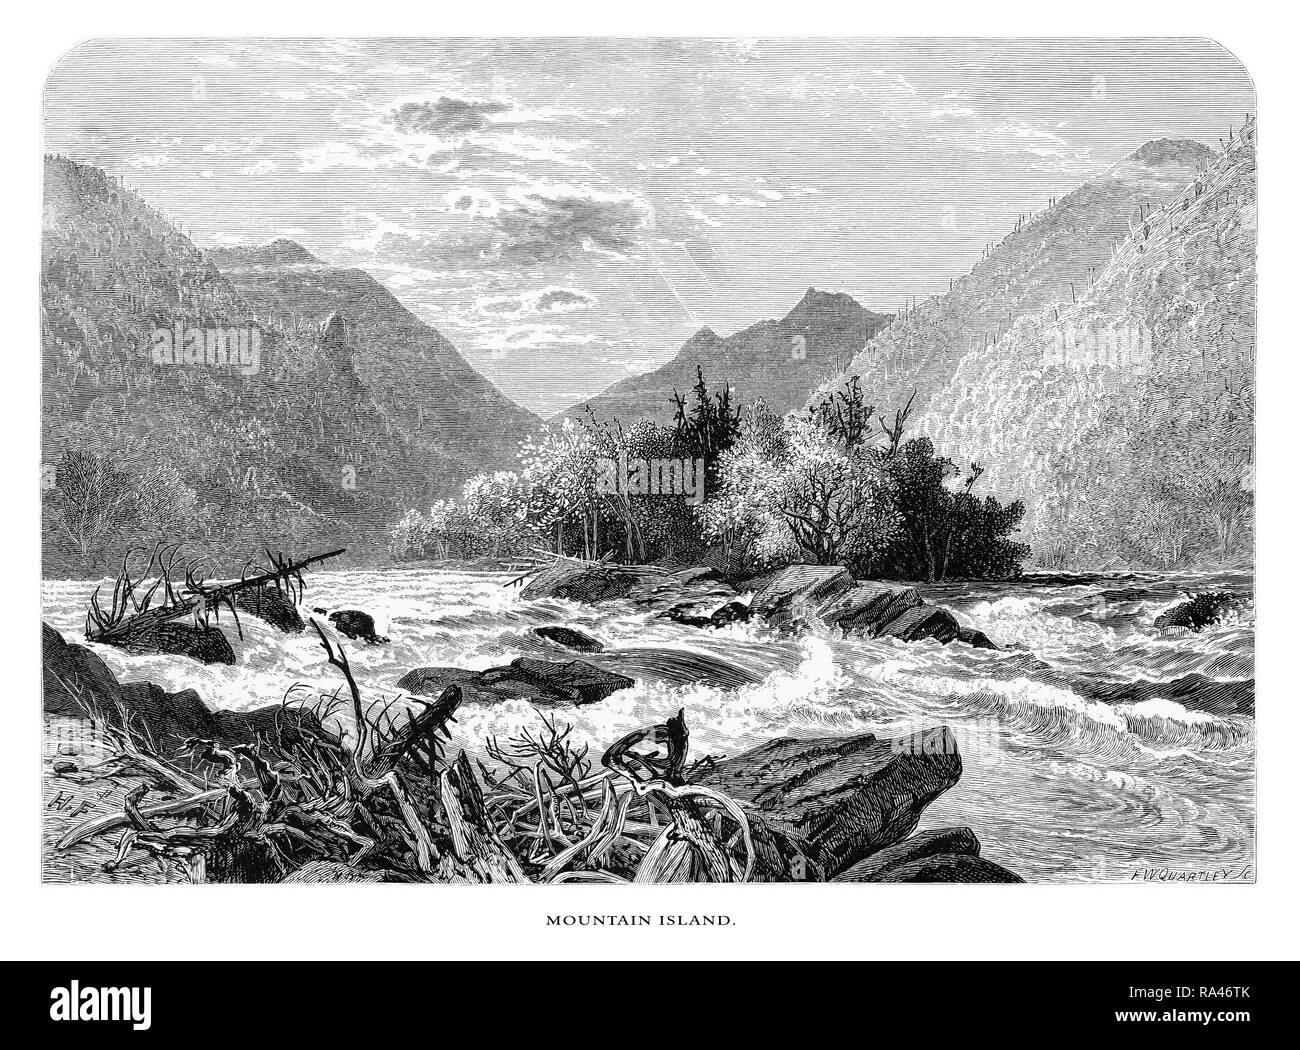 L'île de la montagne française, Large River, North Carolina, United States, American Victorian gravure, 1872 Banque D'Images